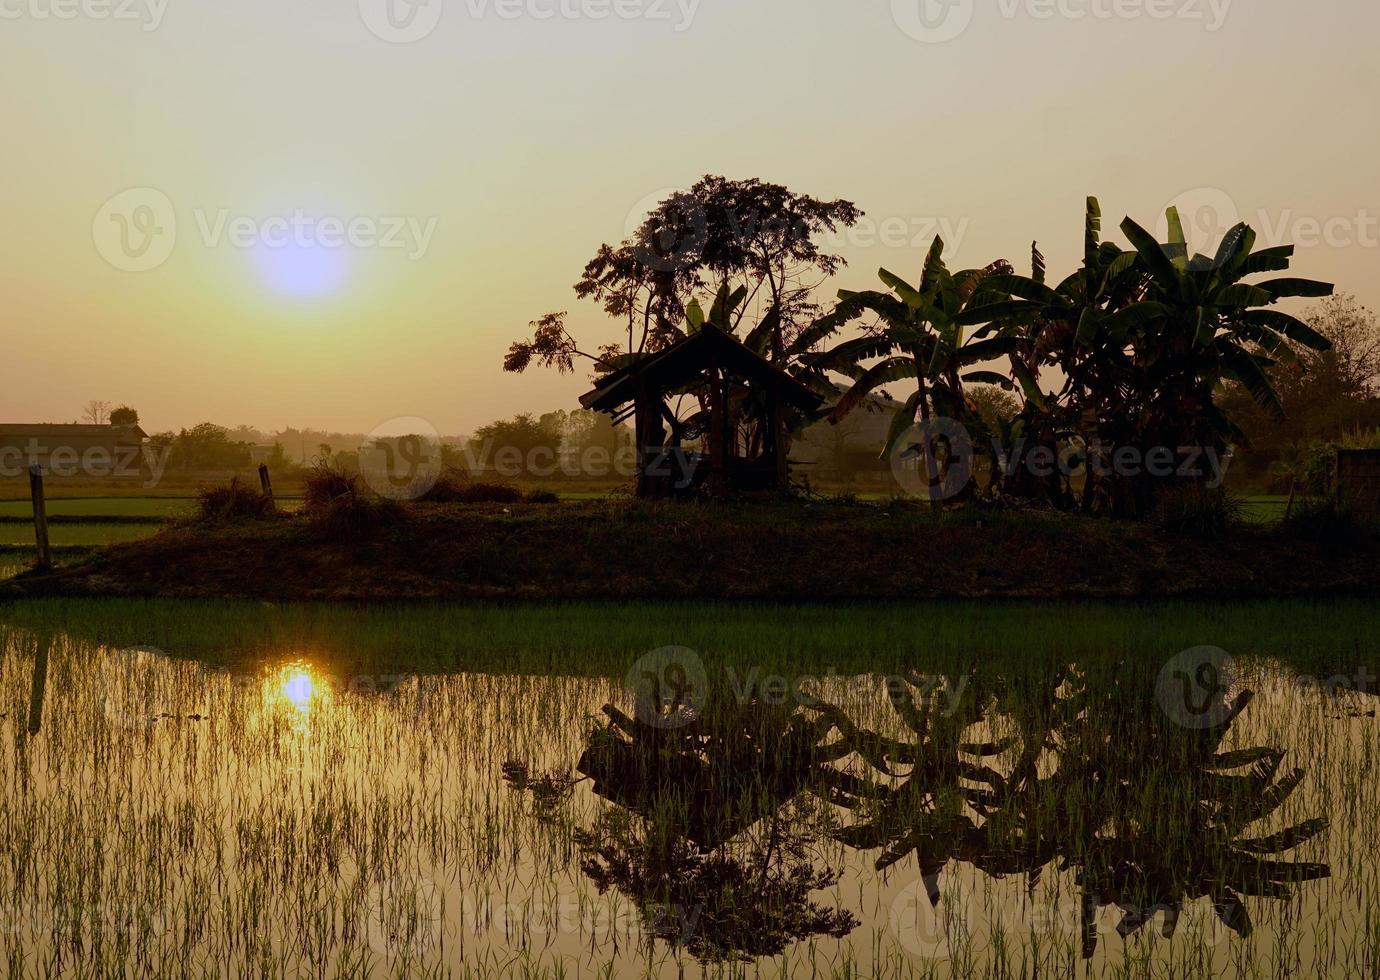 reflexo da luz do sol e das árvores na água nos campos de arroz com vista para o céu amarelo dourado quando o sol está se pondo. foco suave e seletivo. foto